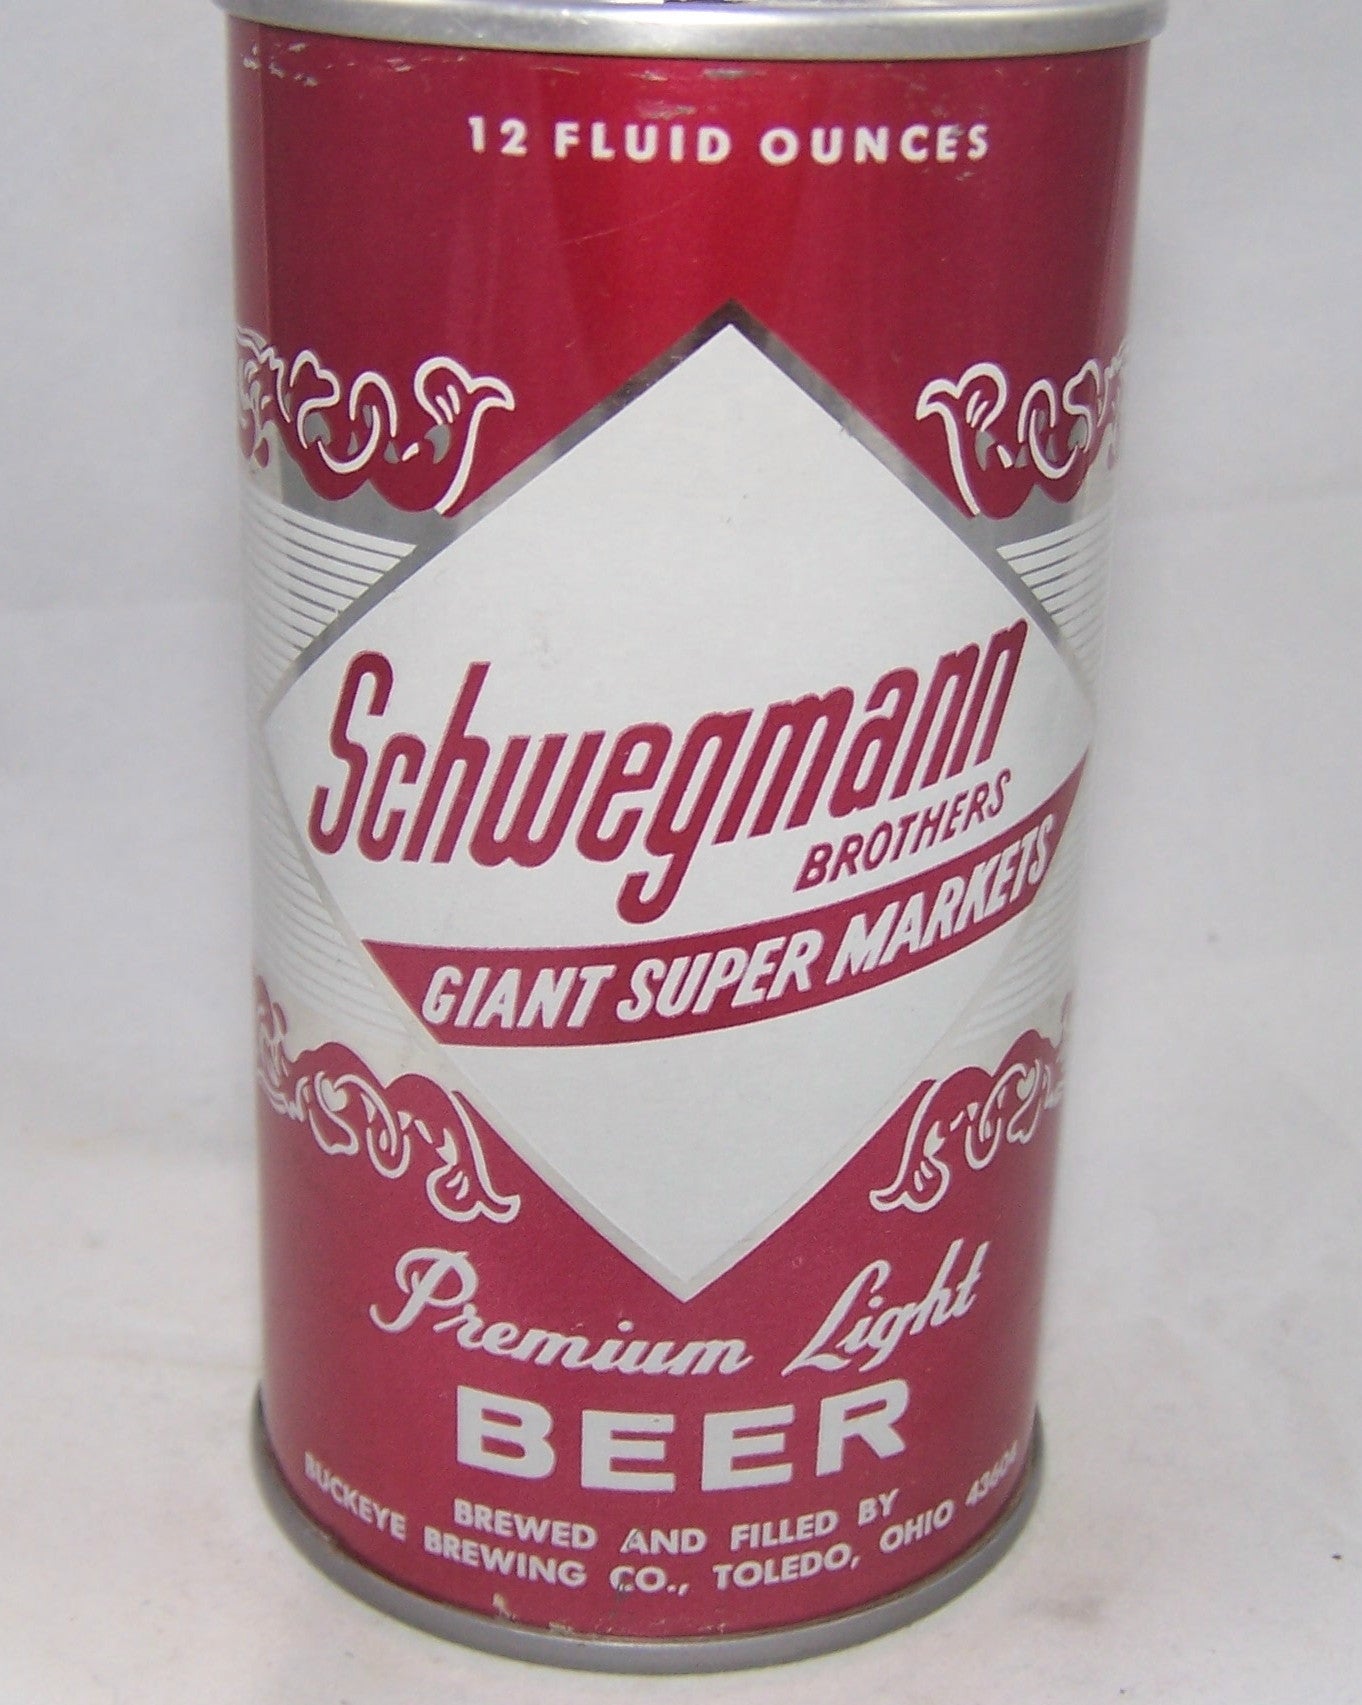 Schwegmanns premium Light Beer, USBC II 123-33, Grade A1+ Sold on 12/18/16